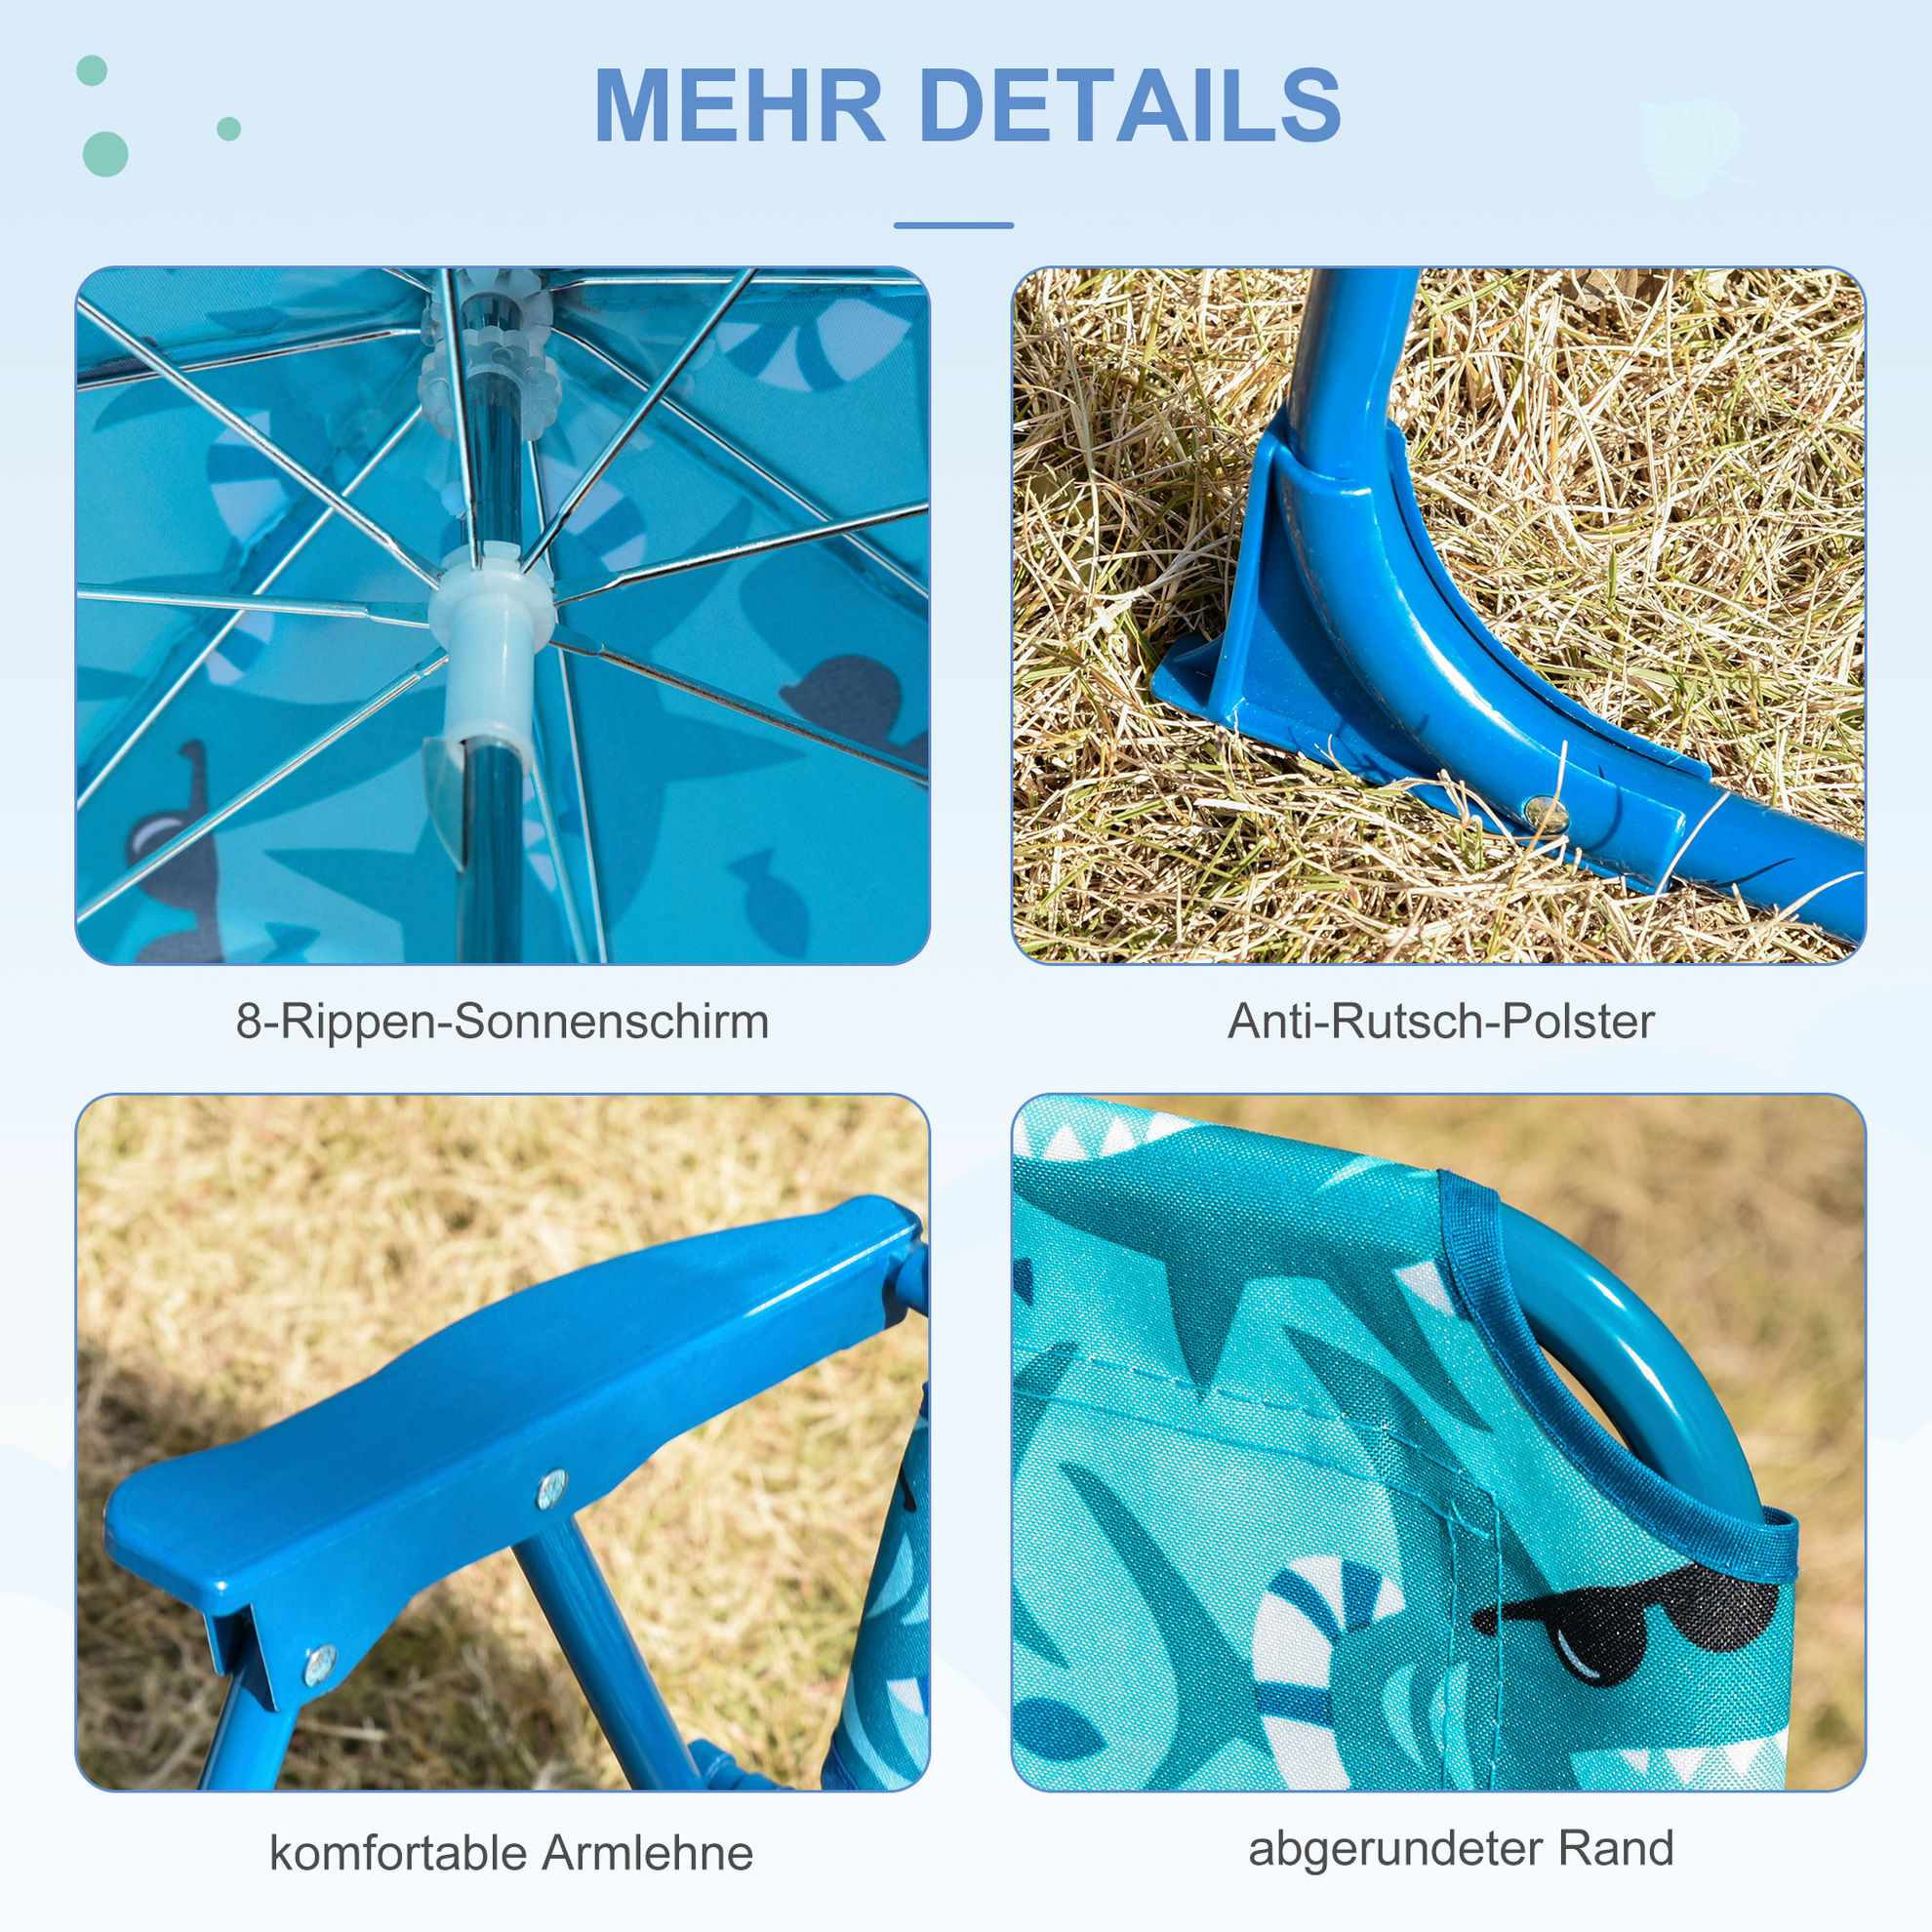 Kinder-Campingstuhl mit Sonnenschirm Farbe: blau | Weltbild.de